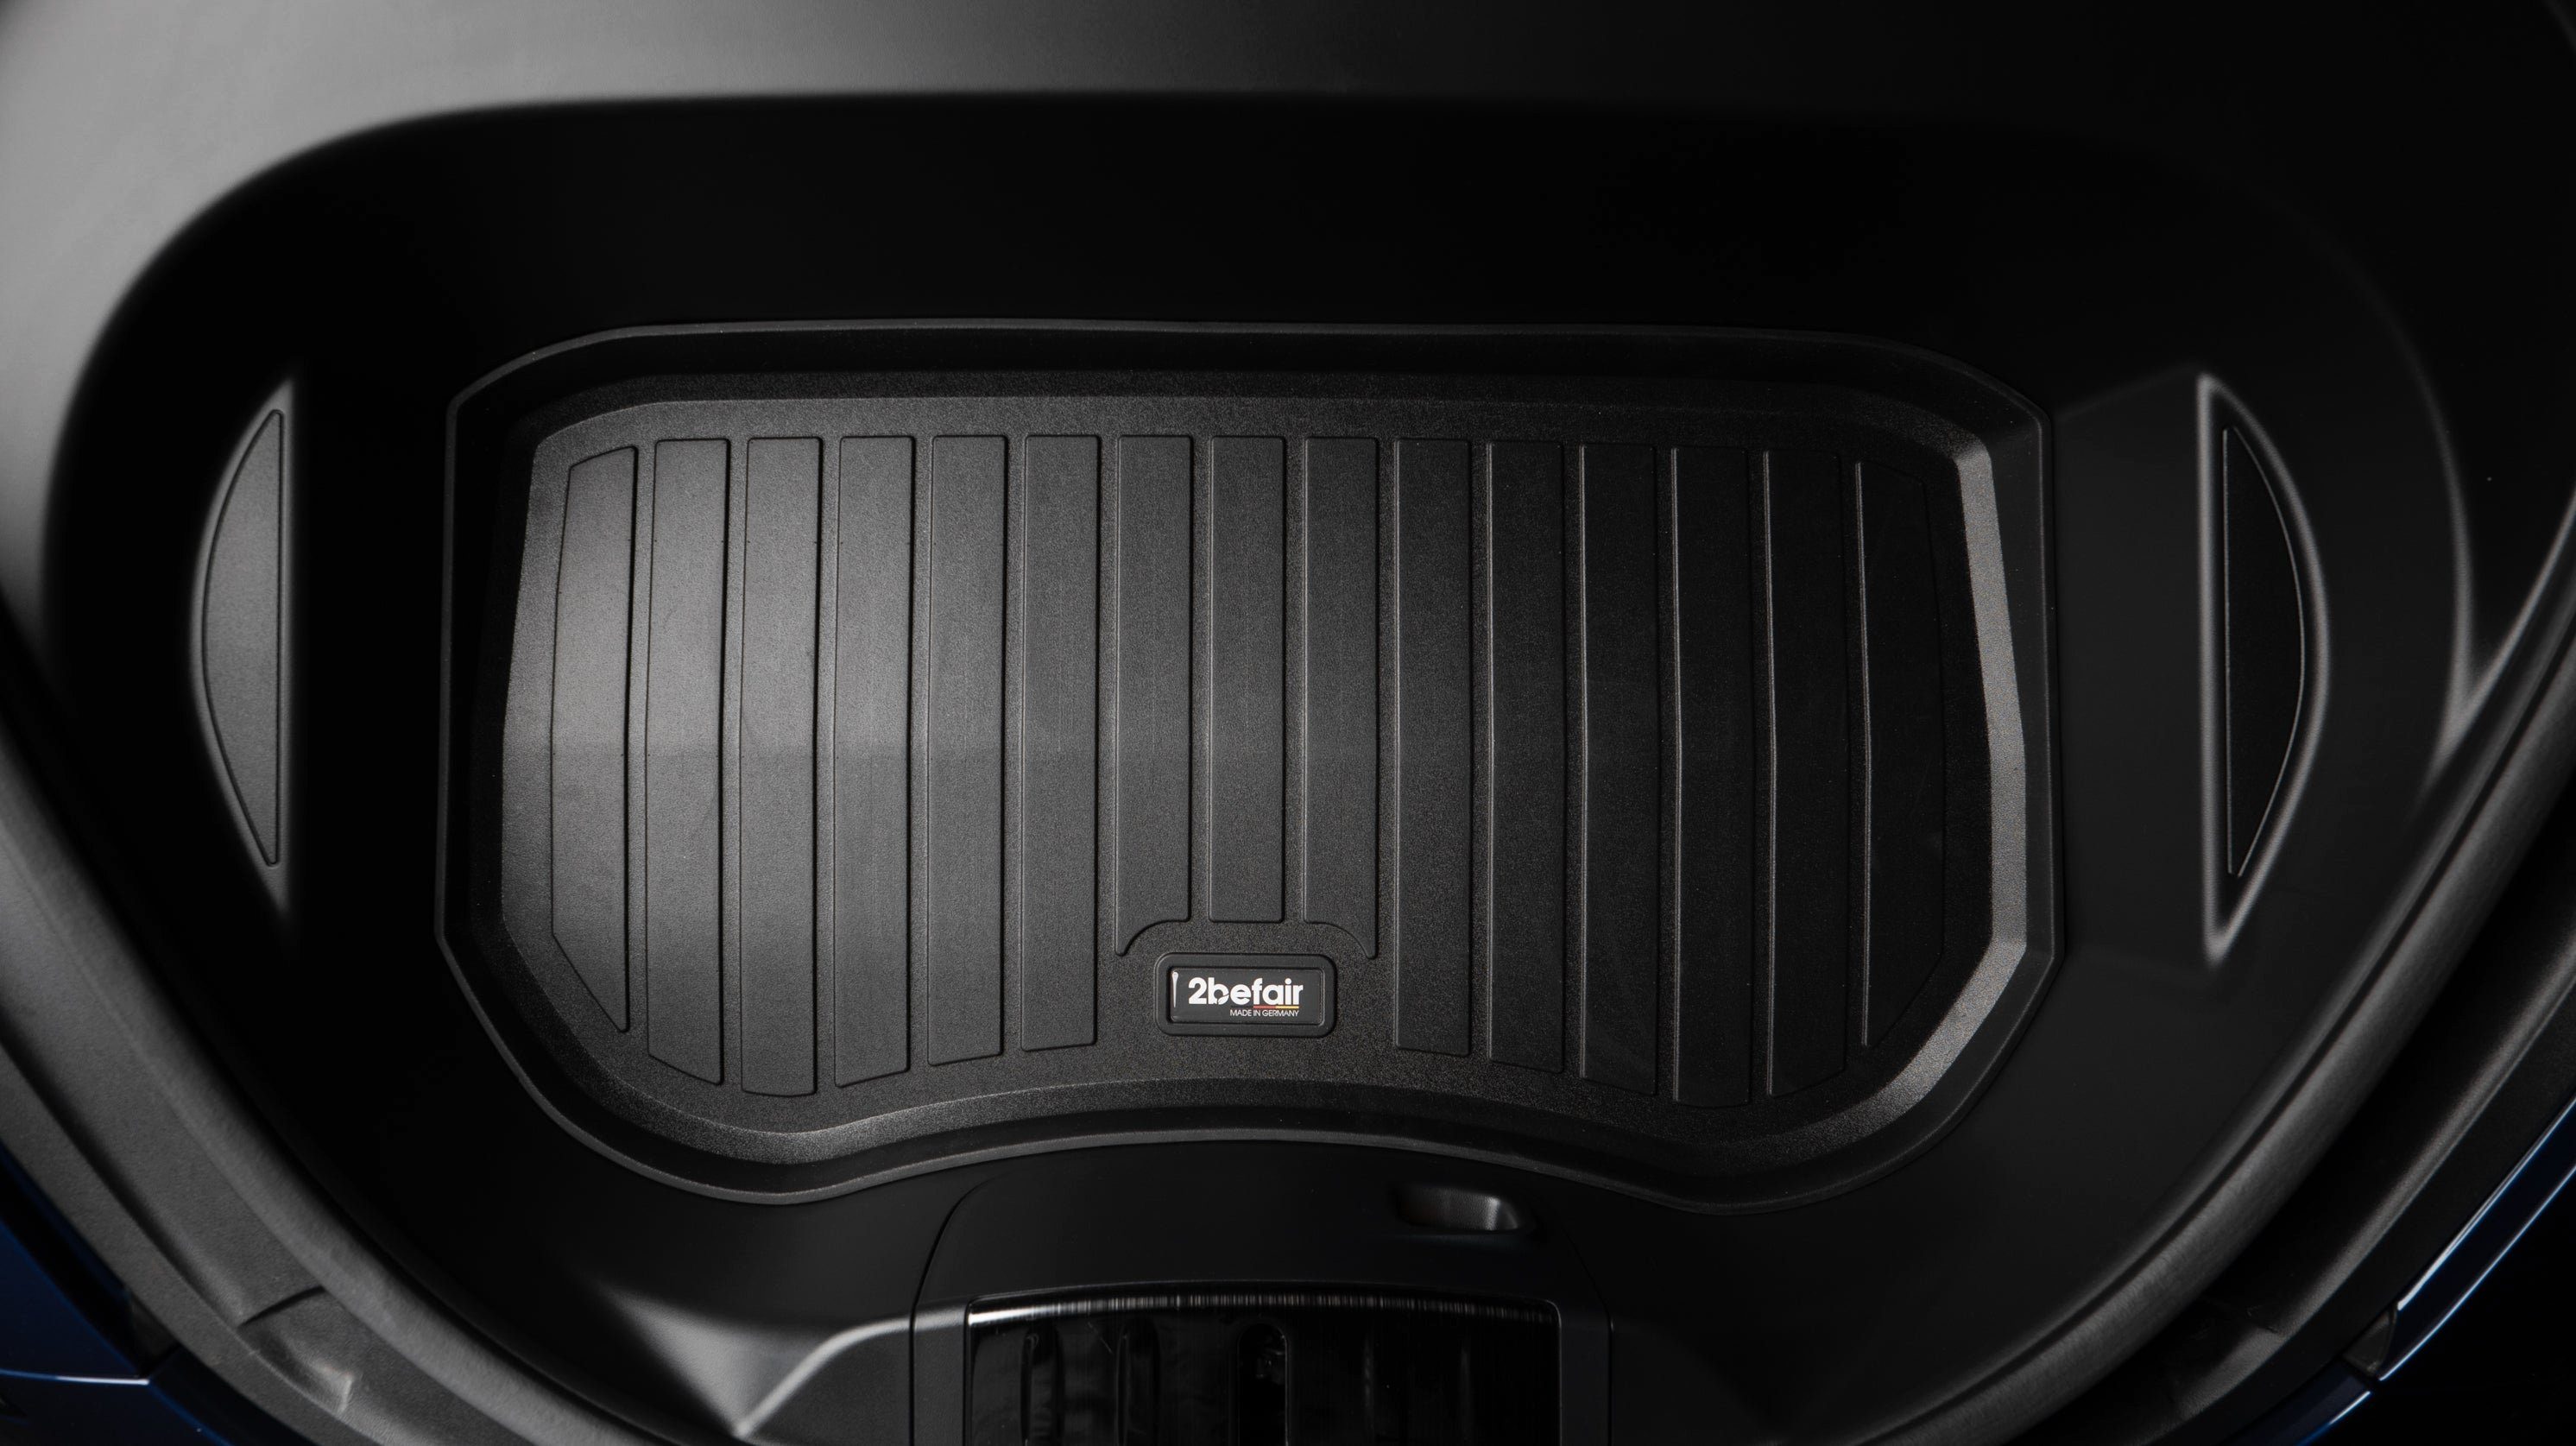 2befair Auto-Fußmatte Gummimatten vorne) Kofferraum (hinten Tesla und Set für für